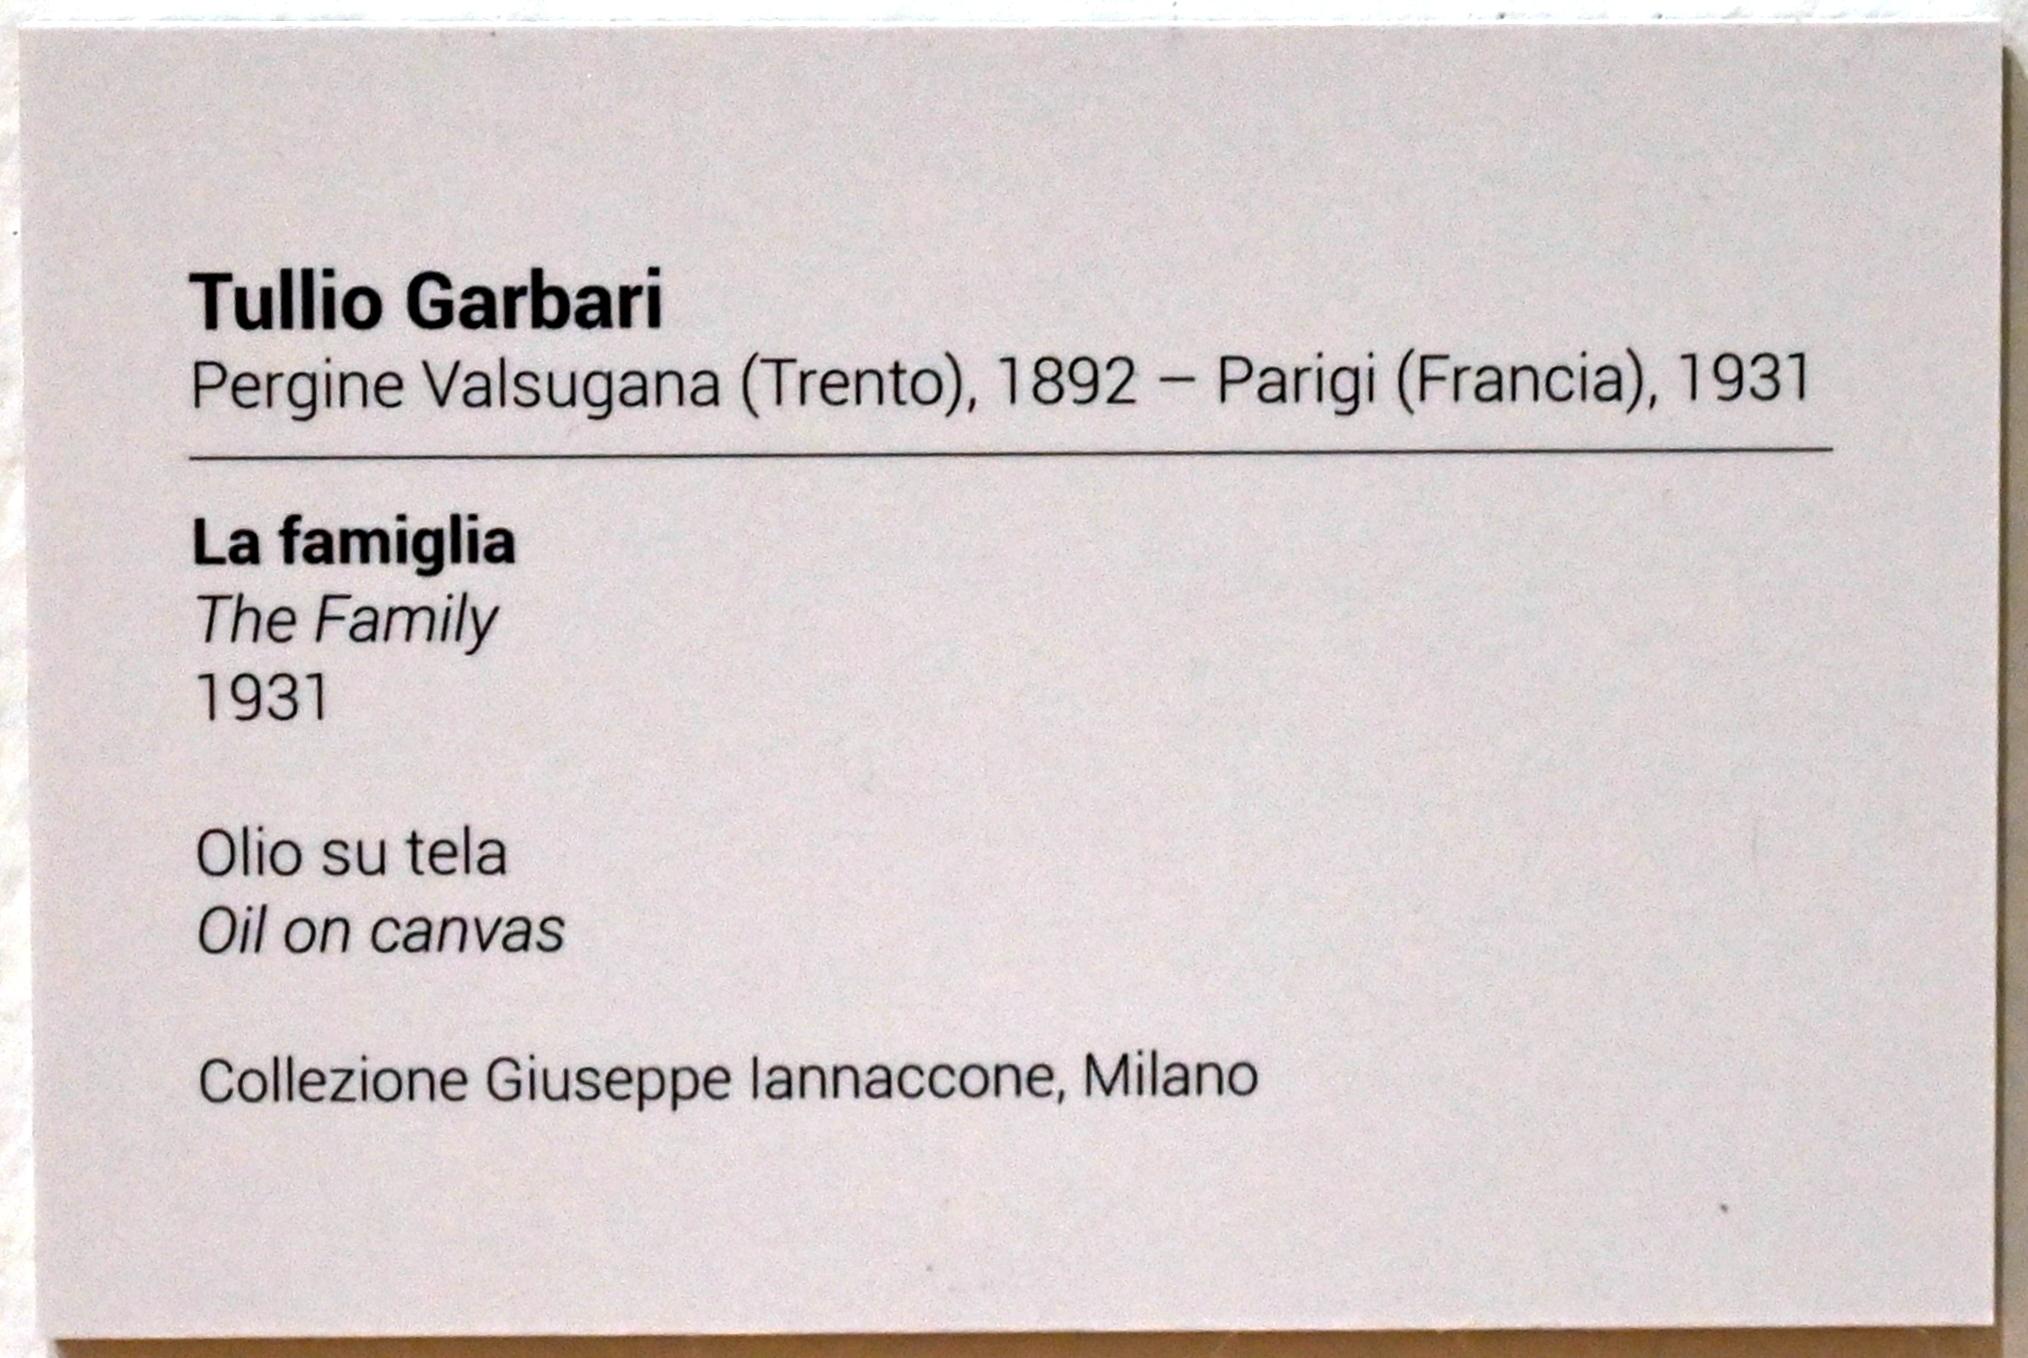 Tullio Garbari (1931), Die Familie, Turin, GAM Torino, Ausstellung "Eine Reise gegen den Strom" vom 05.05.-12.09.2021, Saal 2, 1931, Bild 2/2